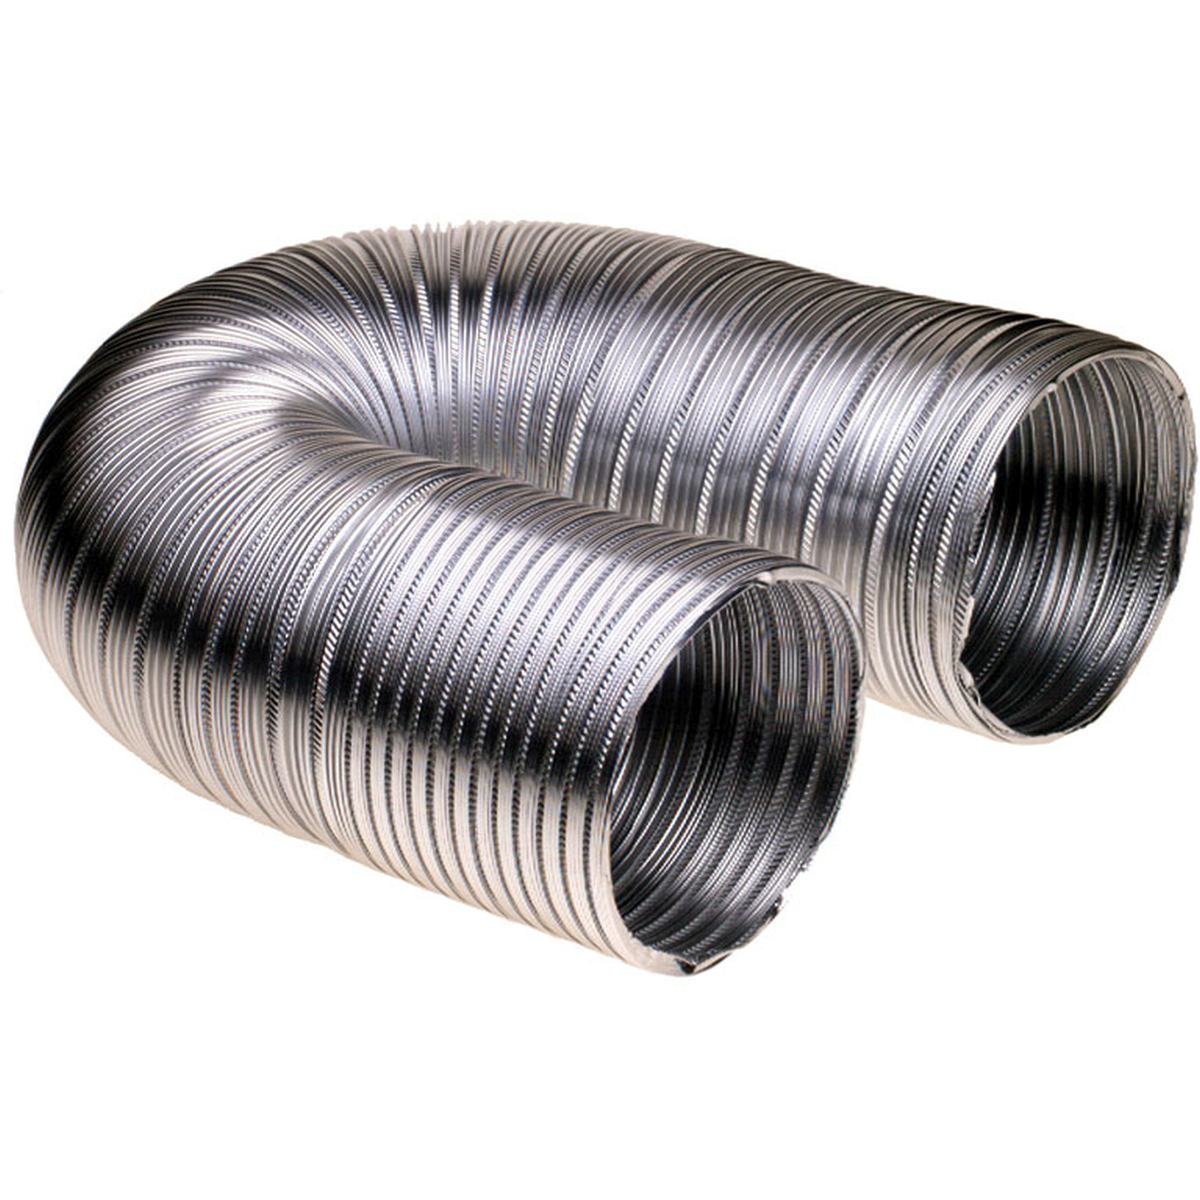 Ventilasjonsslange i aluminium Ø127 mm. 3,0 meter